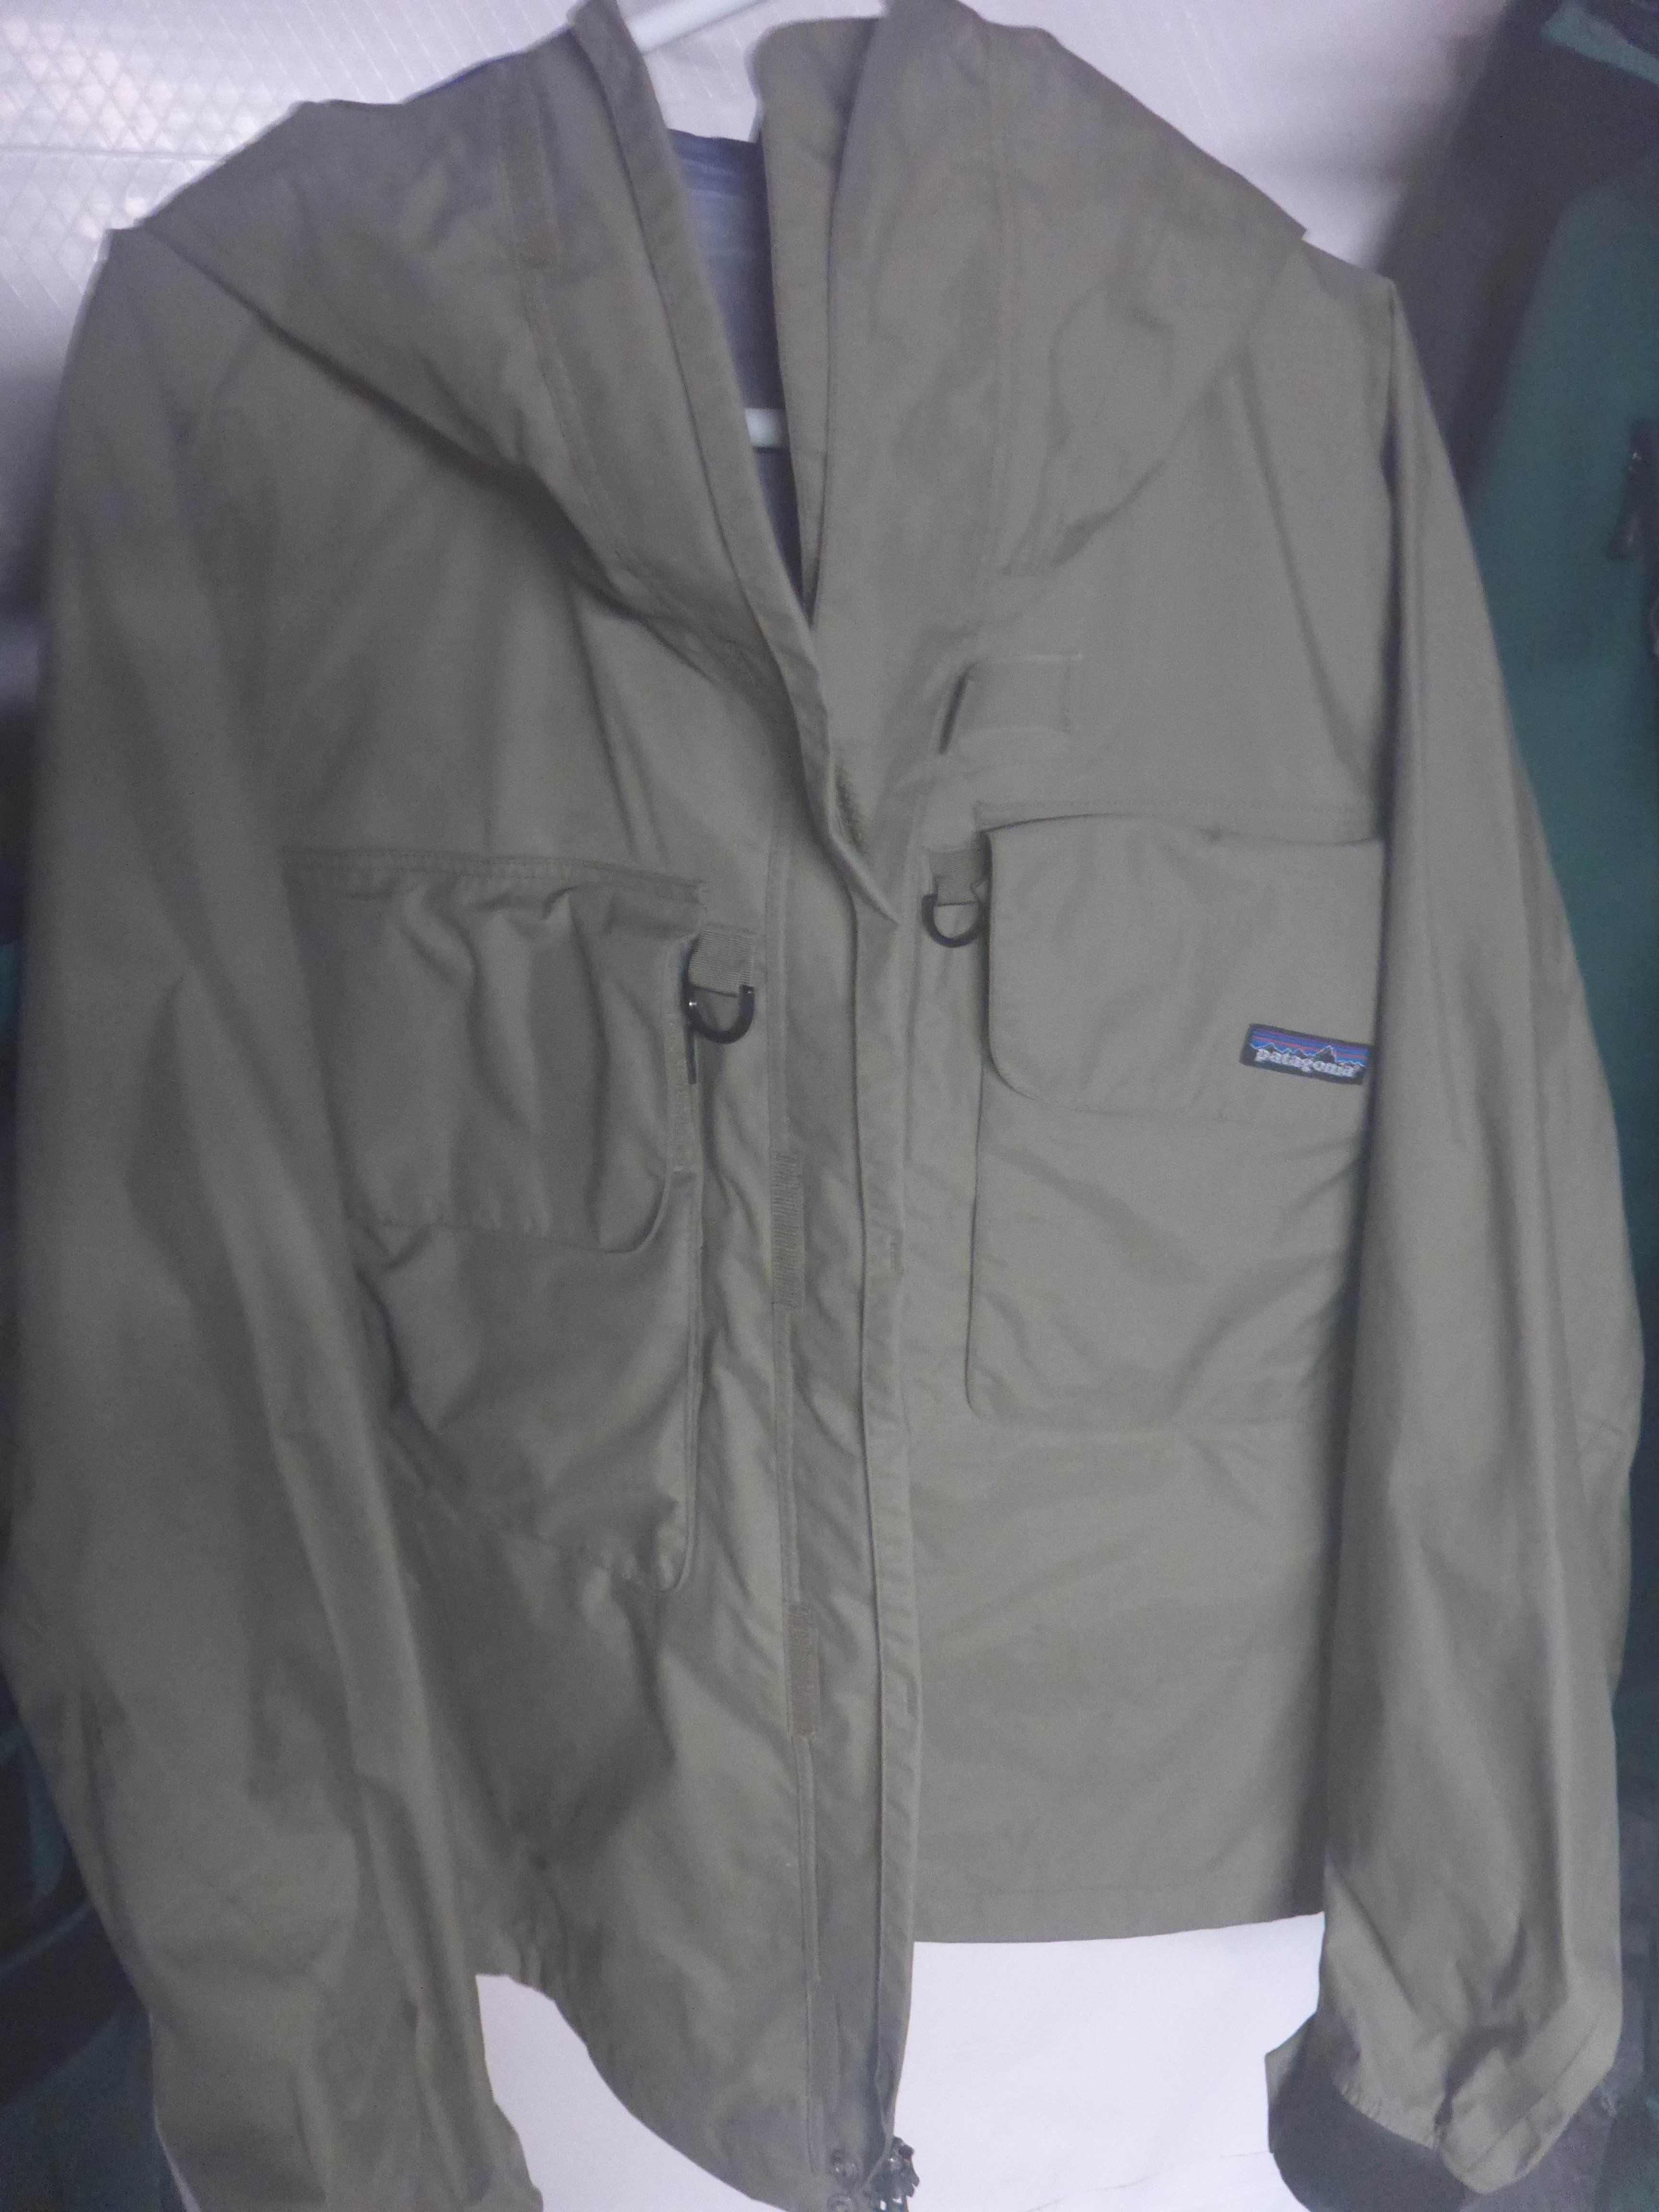 90s patagonia sst jacket